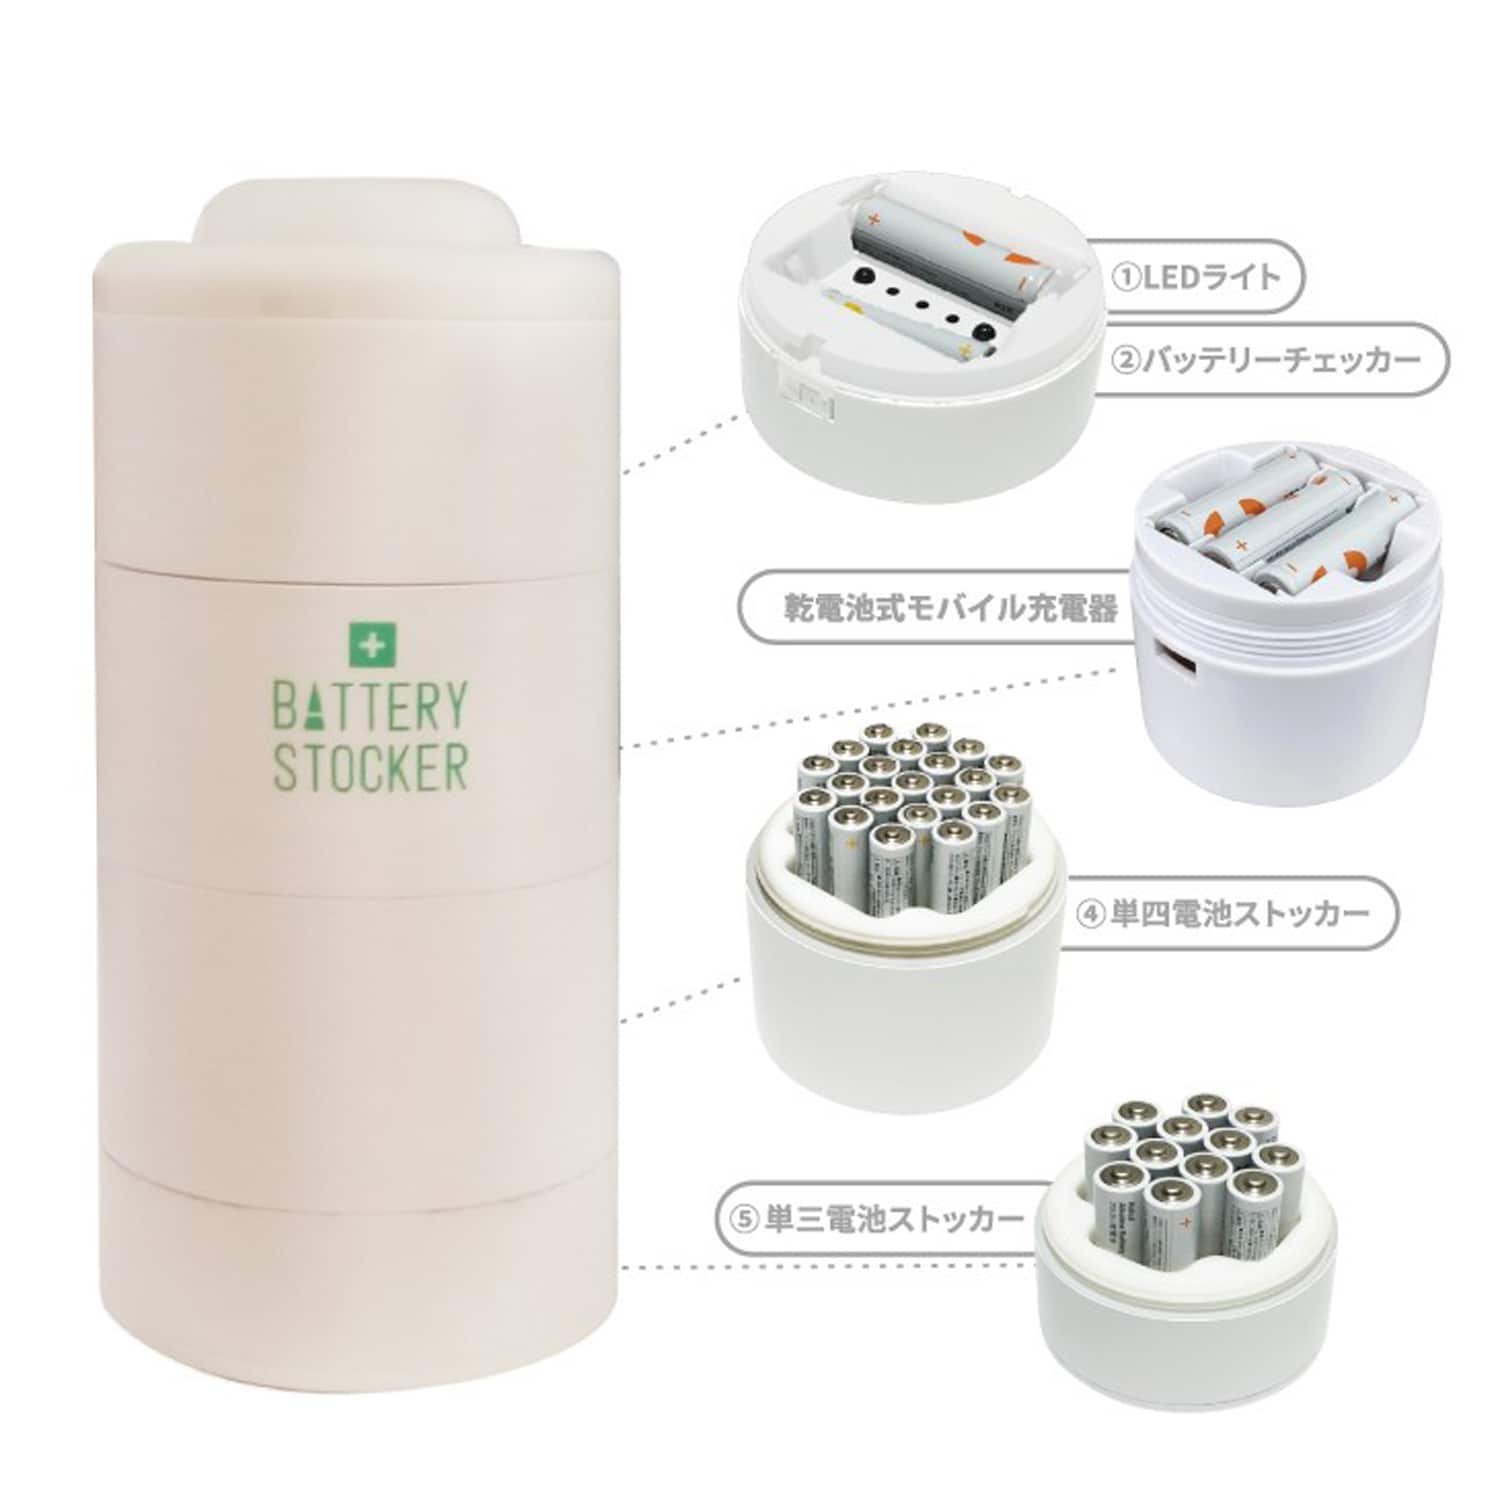 【防災】LEDランタンやモバイル充電器にもなる乾電池収納ケース